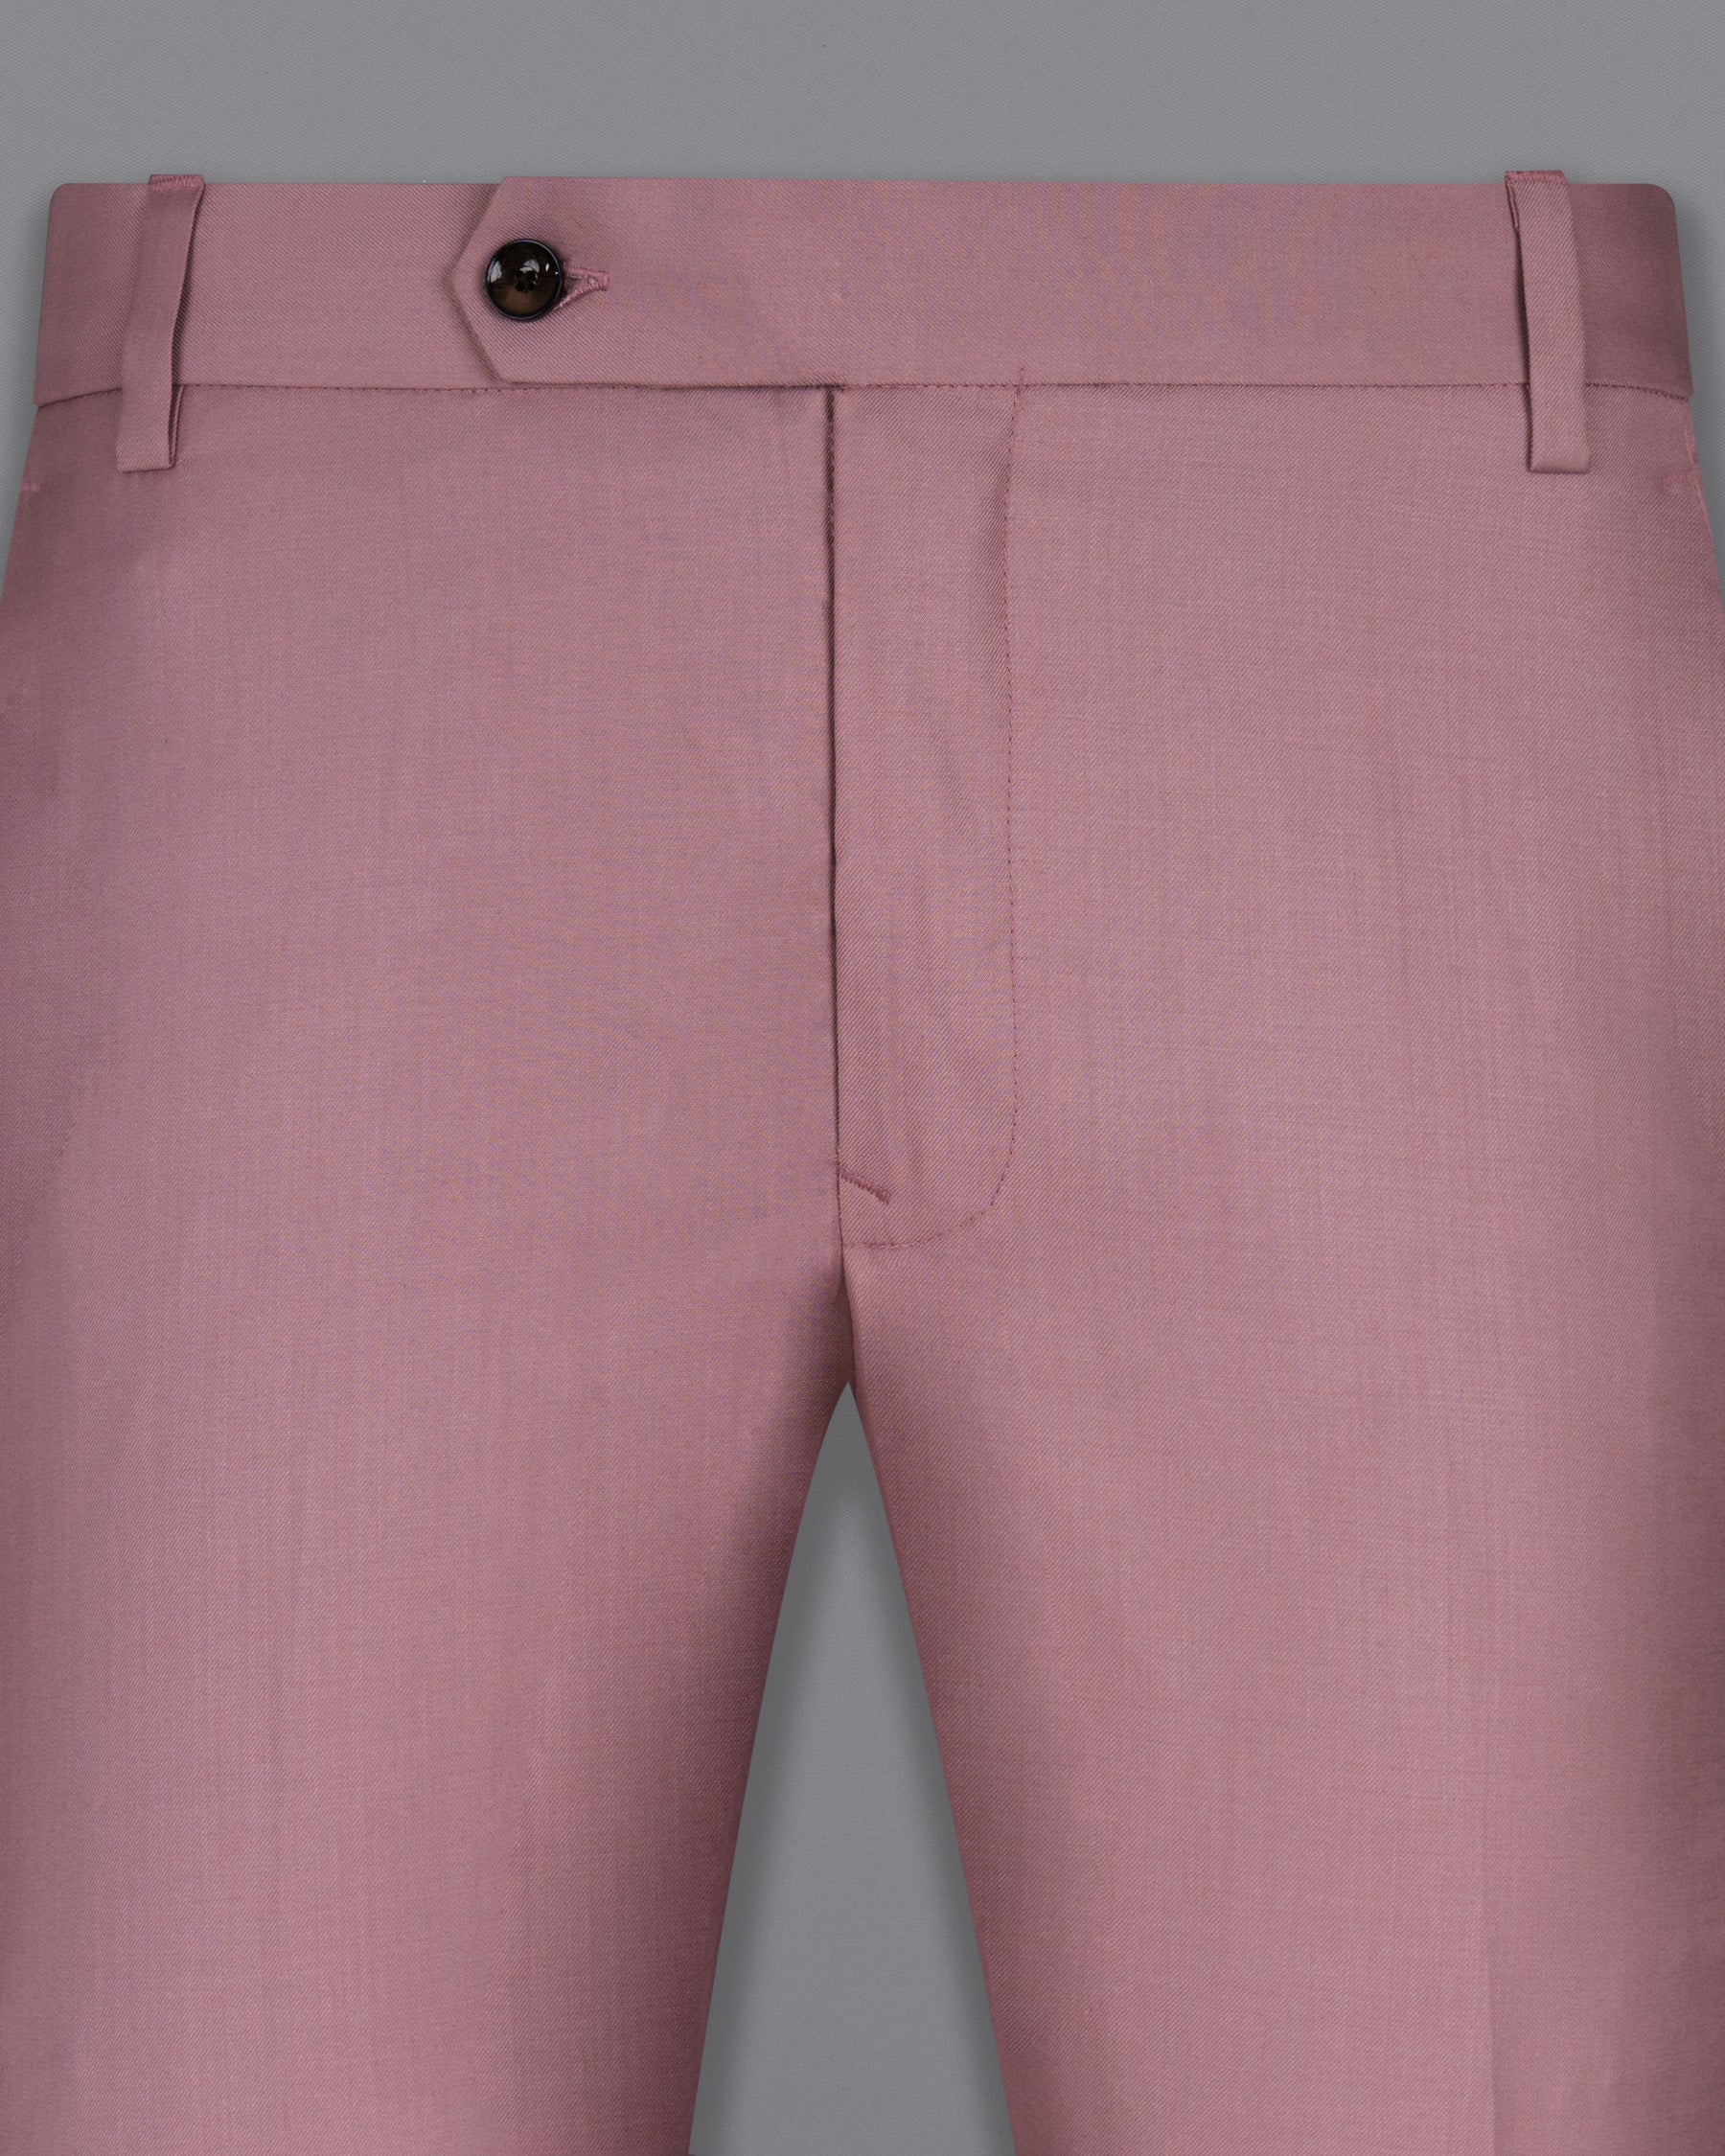 Quicksand Pink Wool Rich Pant T1504-28, T1504-30, T1504-32, T1504-34, T1504-36, T1504-38, T1504-40, T1504-42, T1504-44